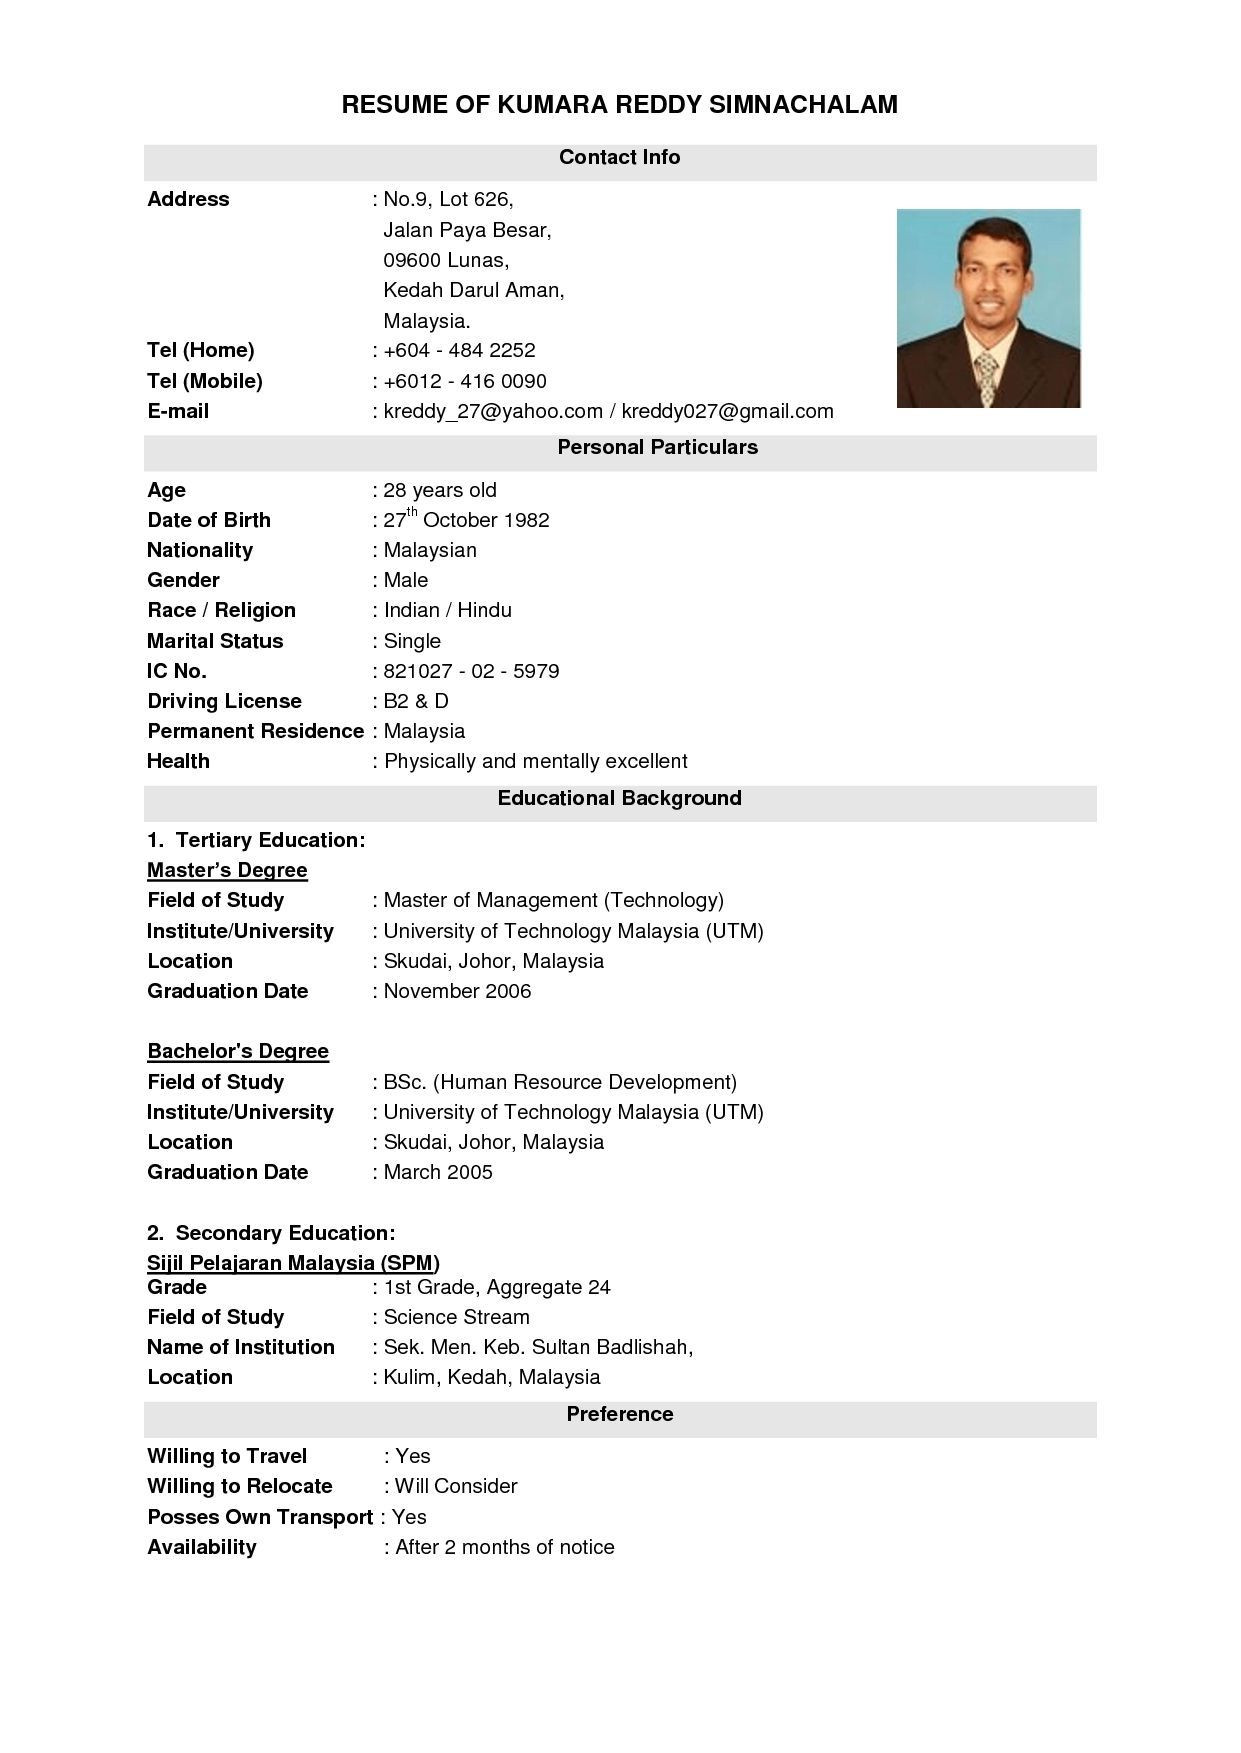 Jobstreet Resume Sample for Fresh Graduate Resume Templates Jobstreet #jobstreet #resume #resumetemplates …